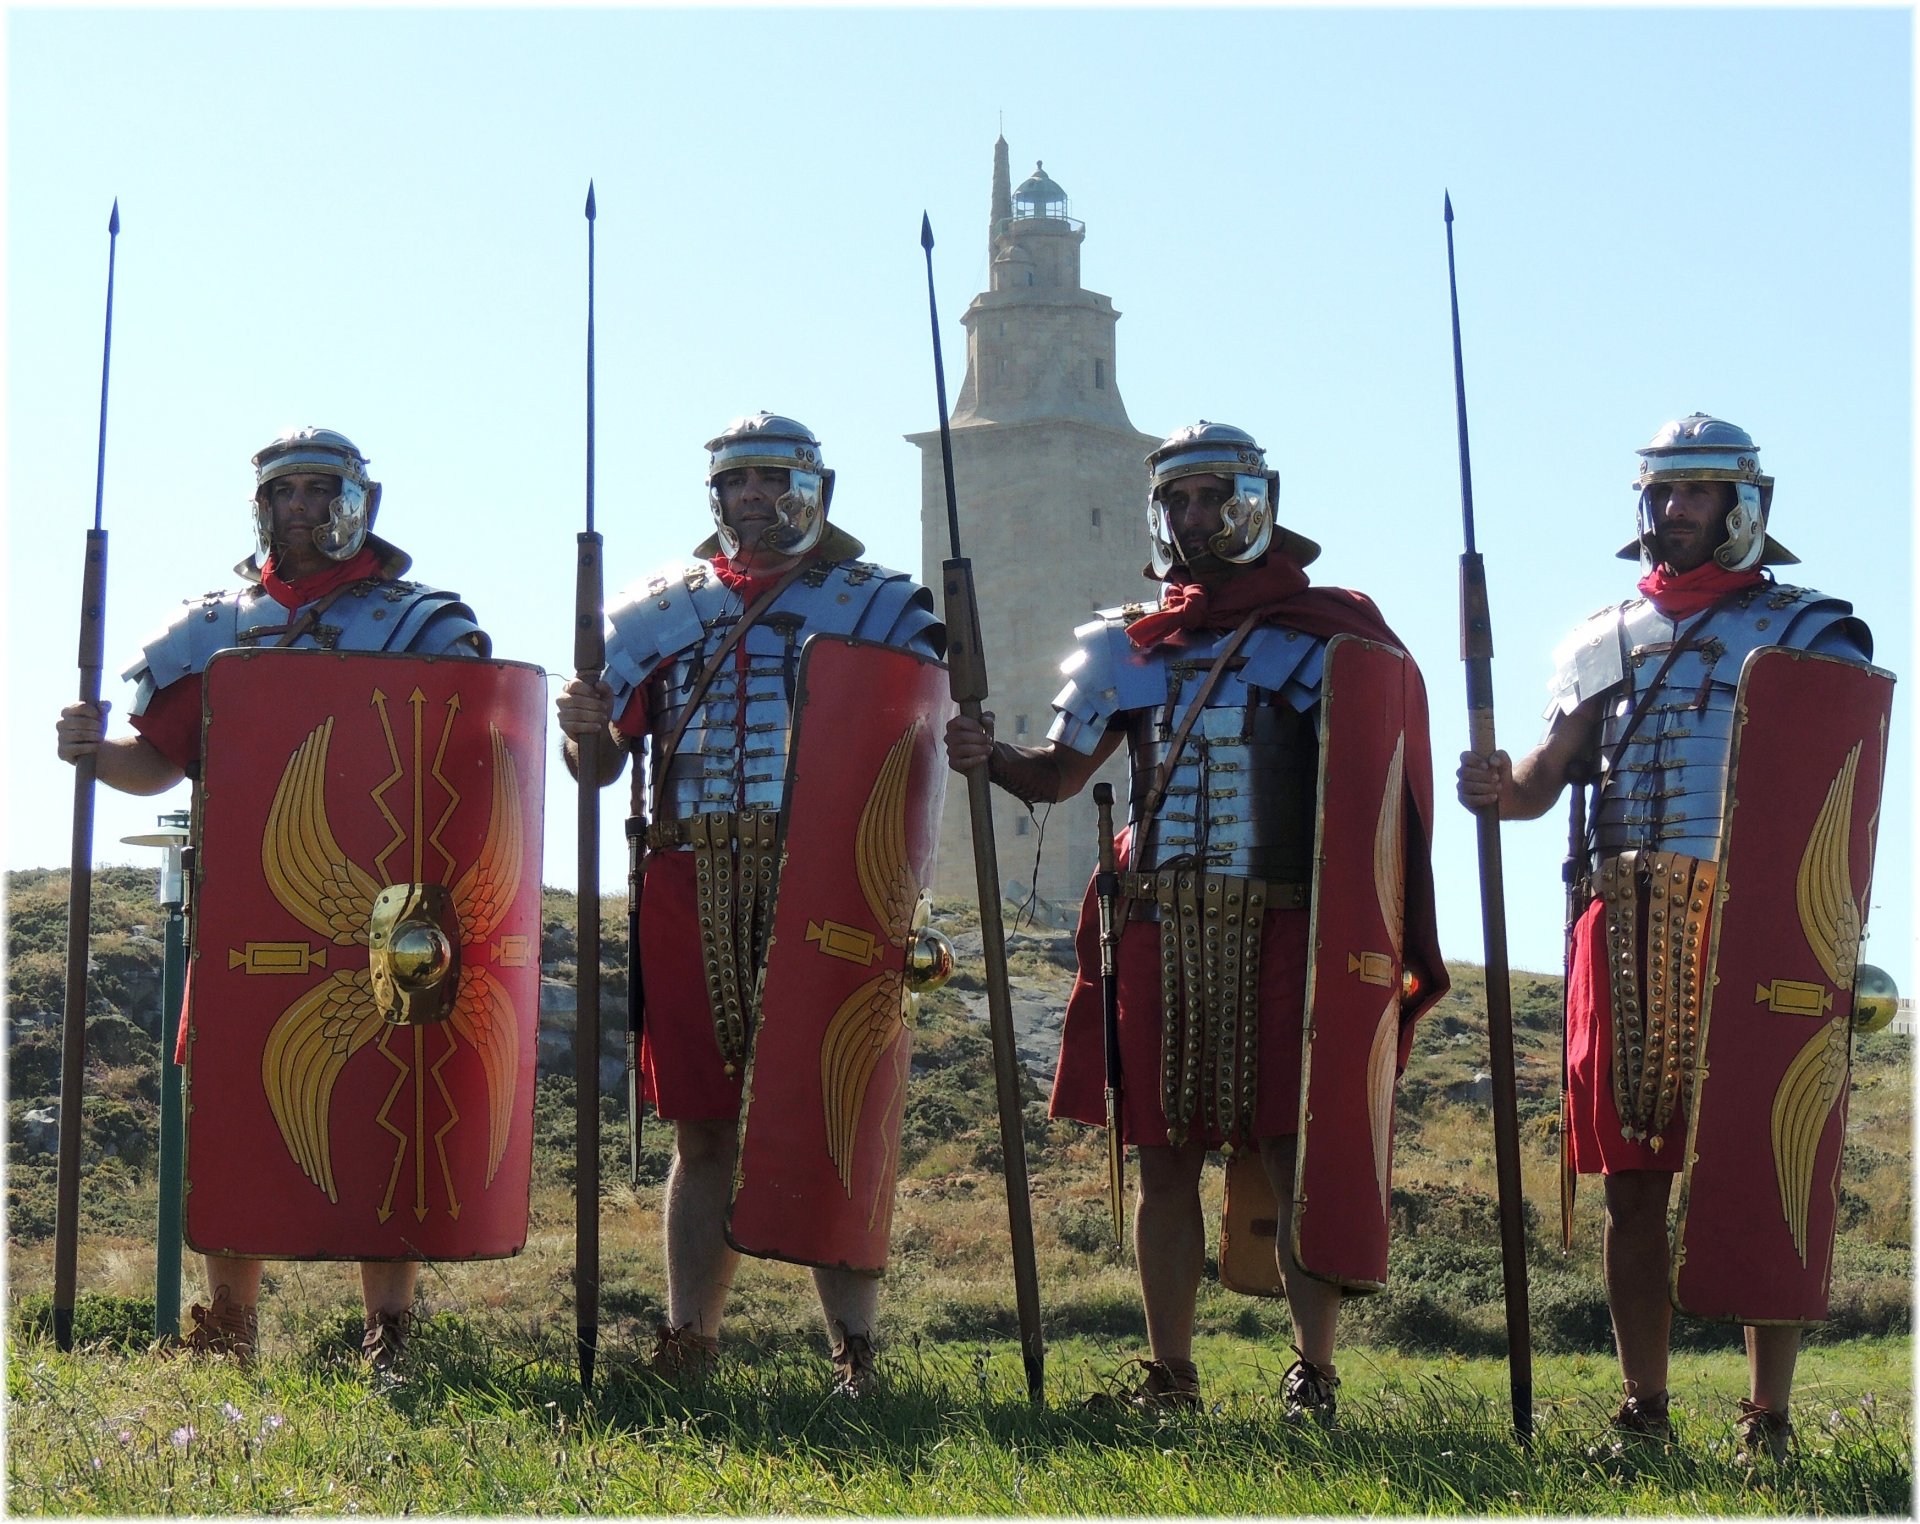 римские легионеры туники доспехи обувь «калиги» дротики мечи щиты шлемы холм трава башня военно-историческая реконструкция